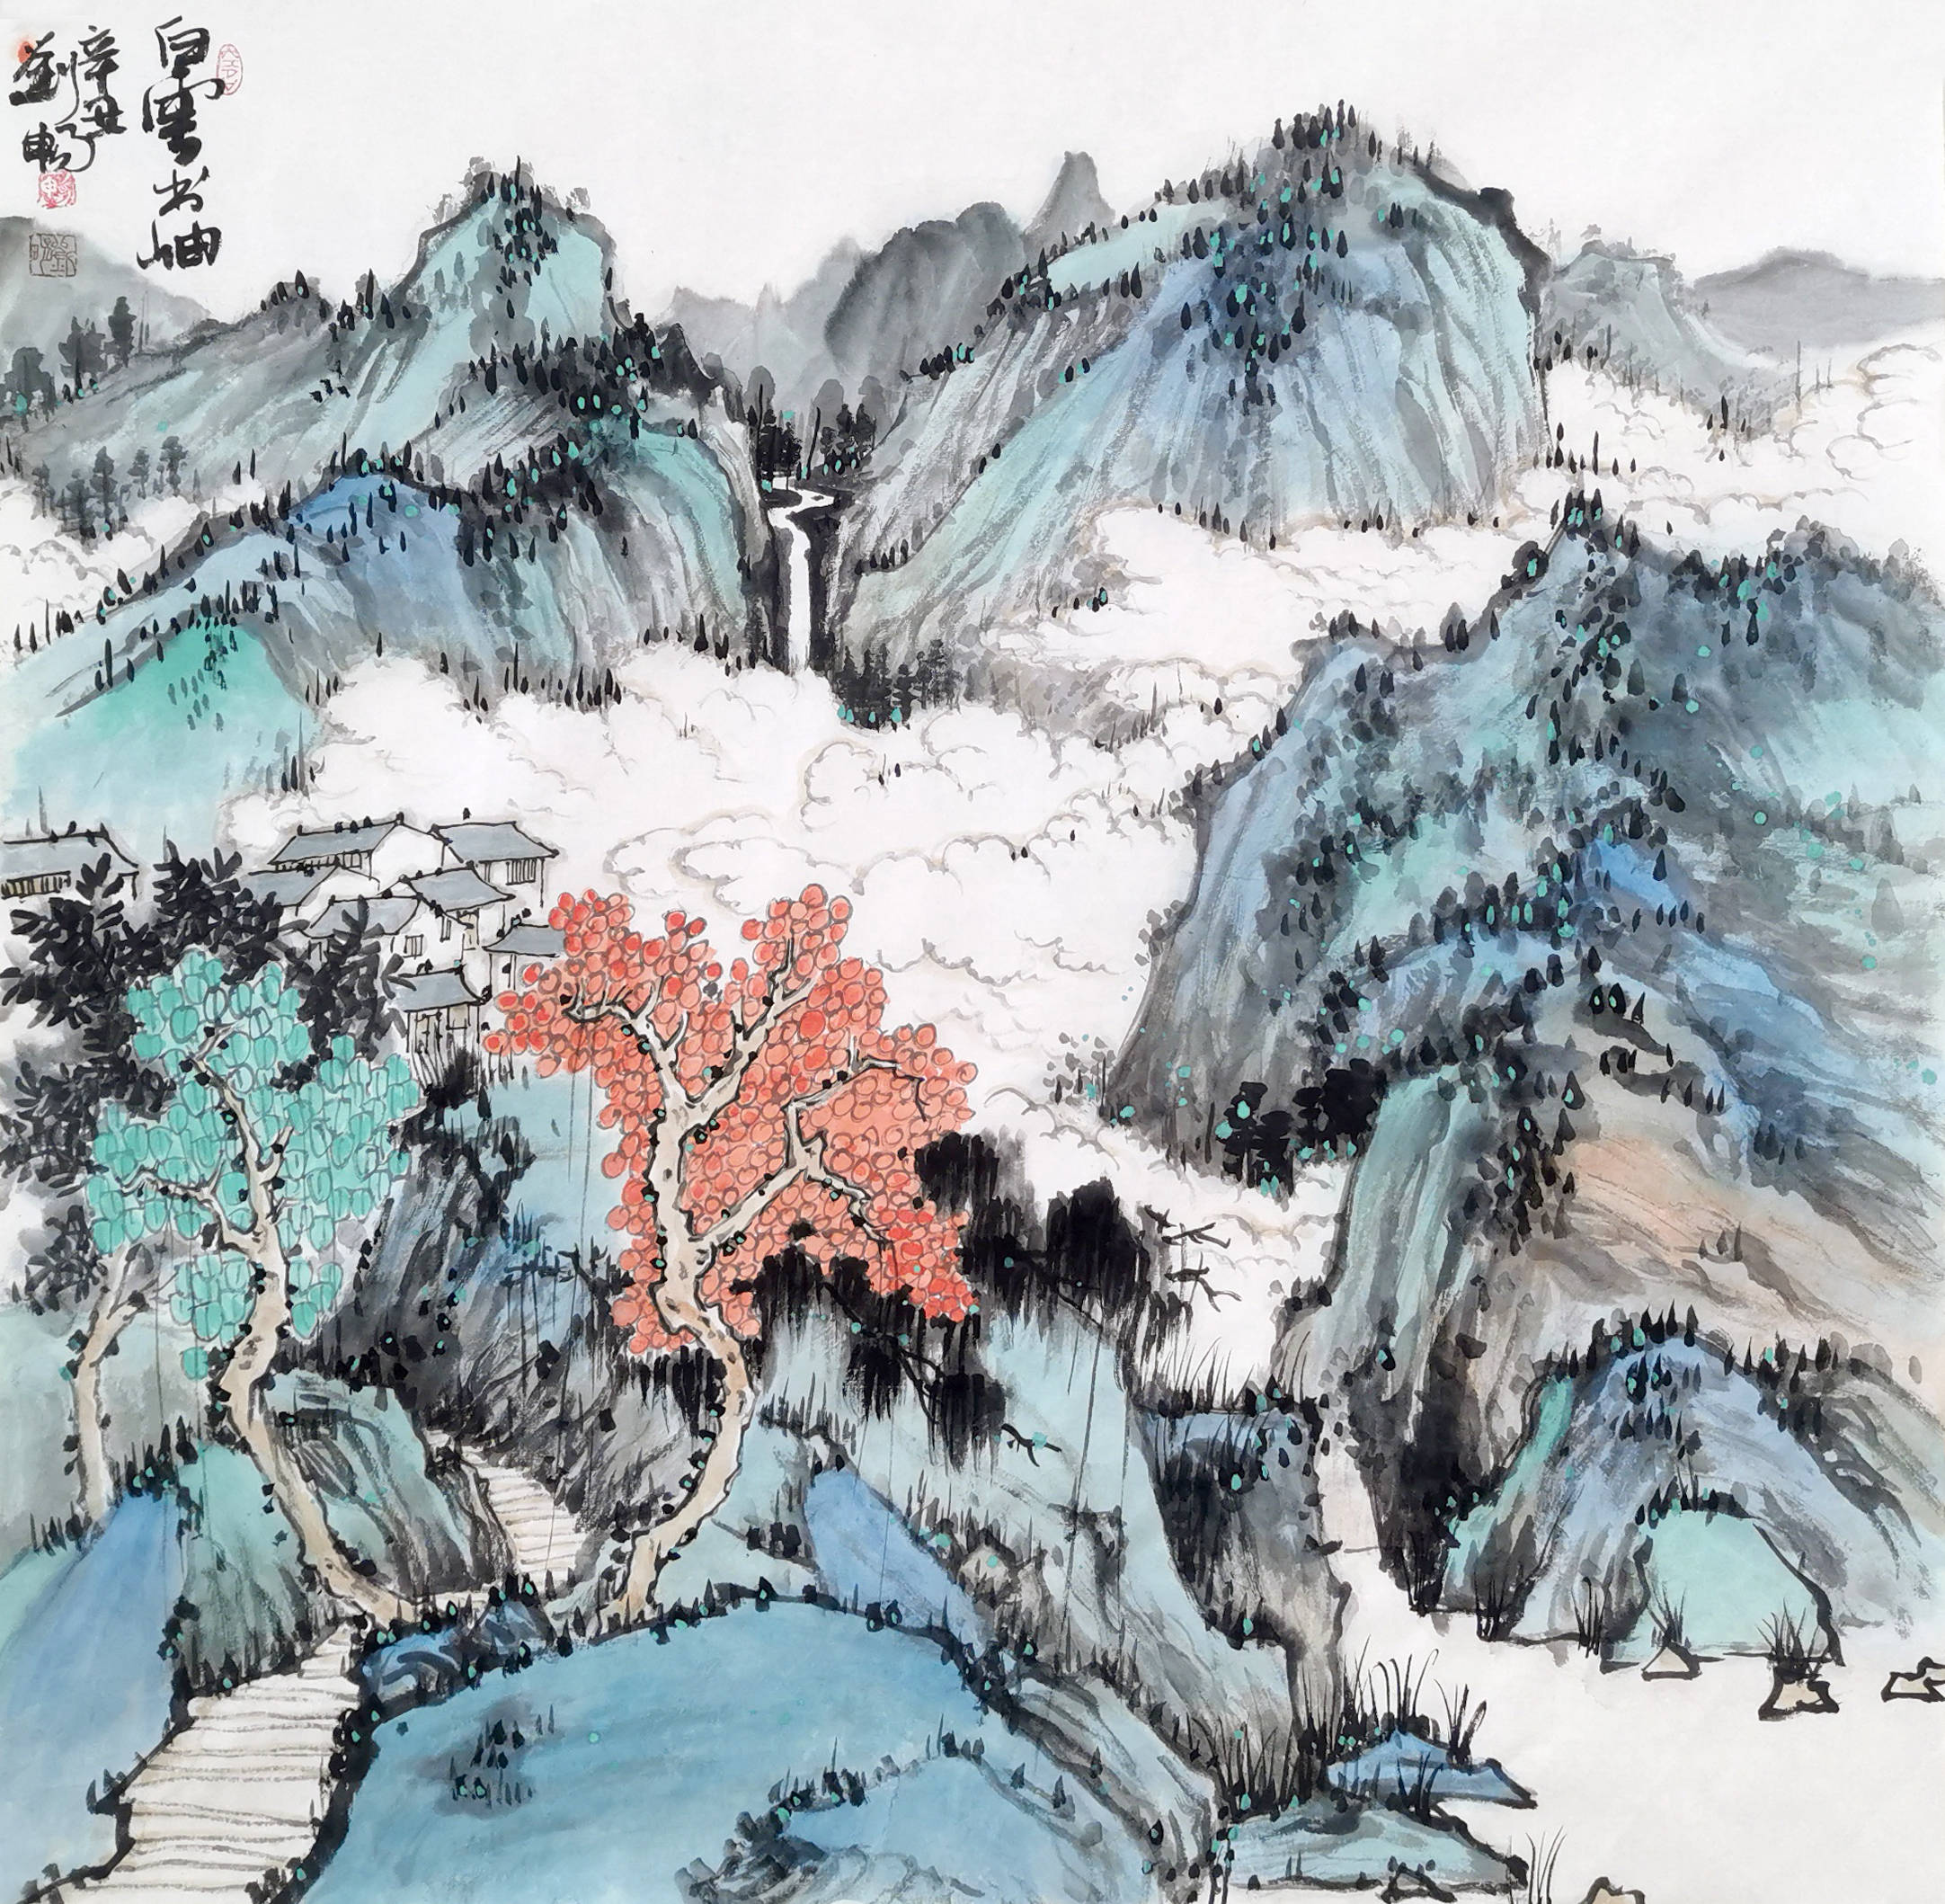 刘元乙:以笔墨展现祖国壮丽河山,弘扬中国传统文化